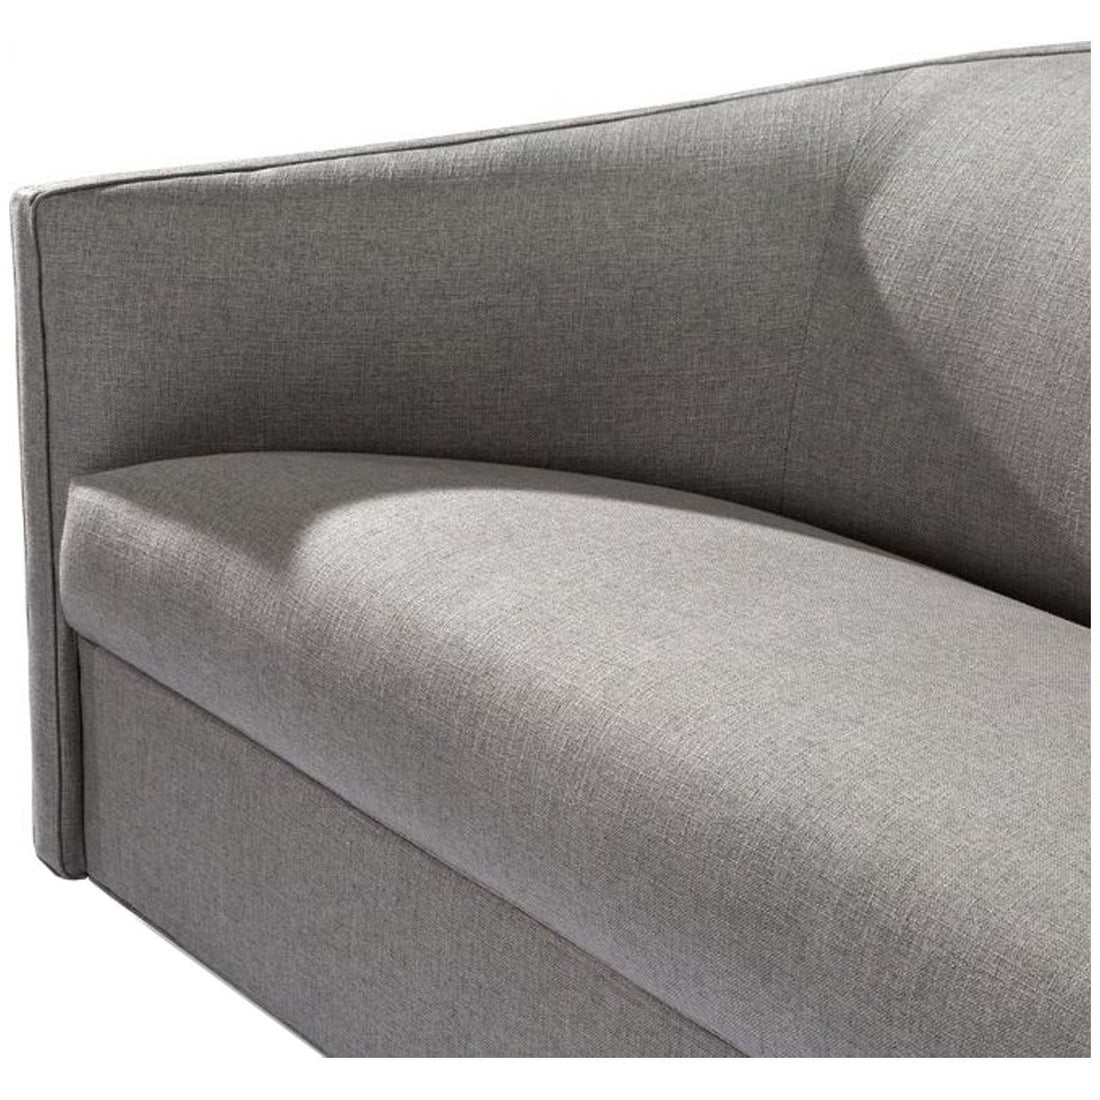 Interlude Home Turin Sofa - Faux Linen